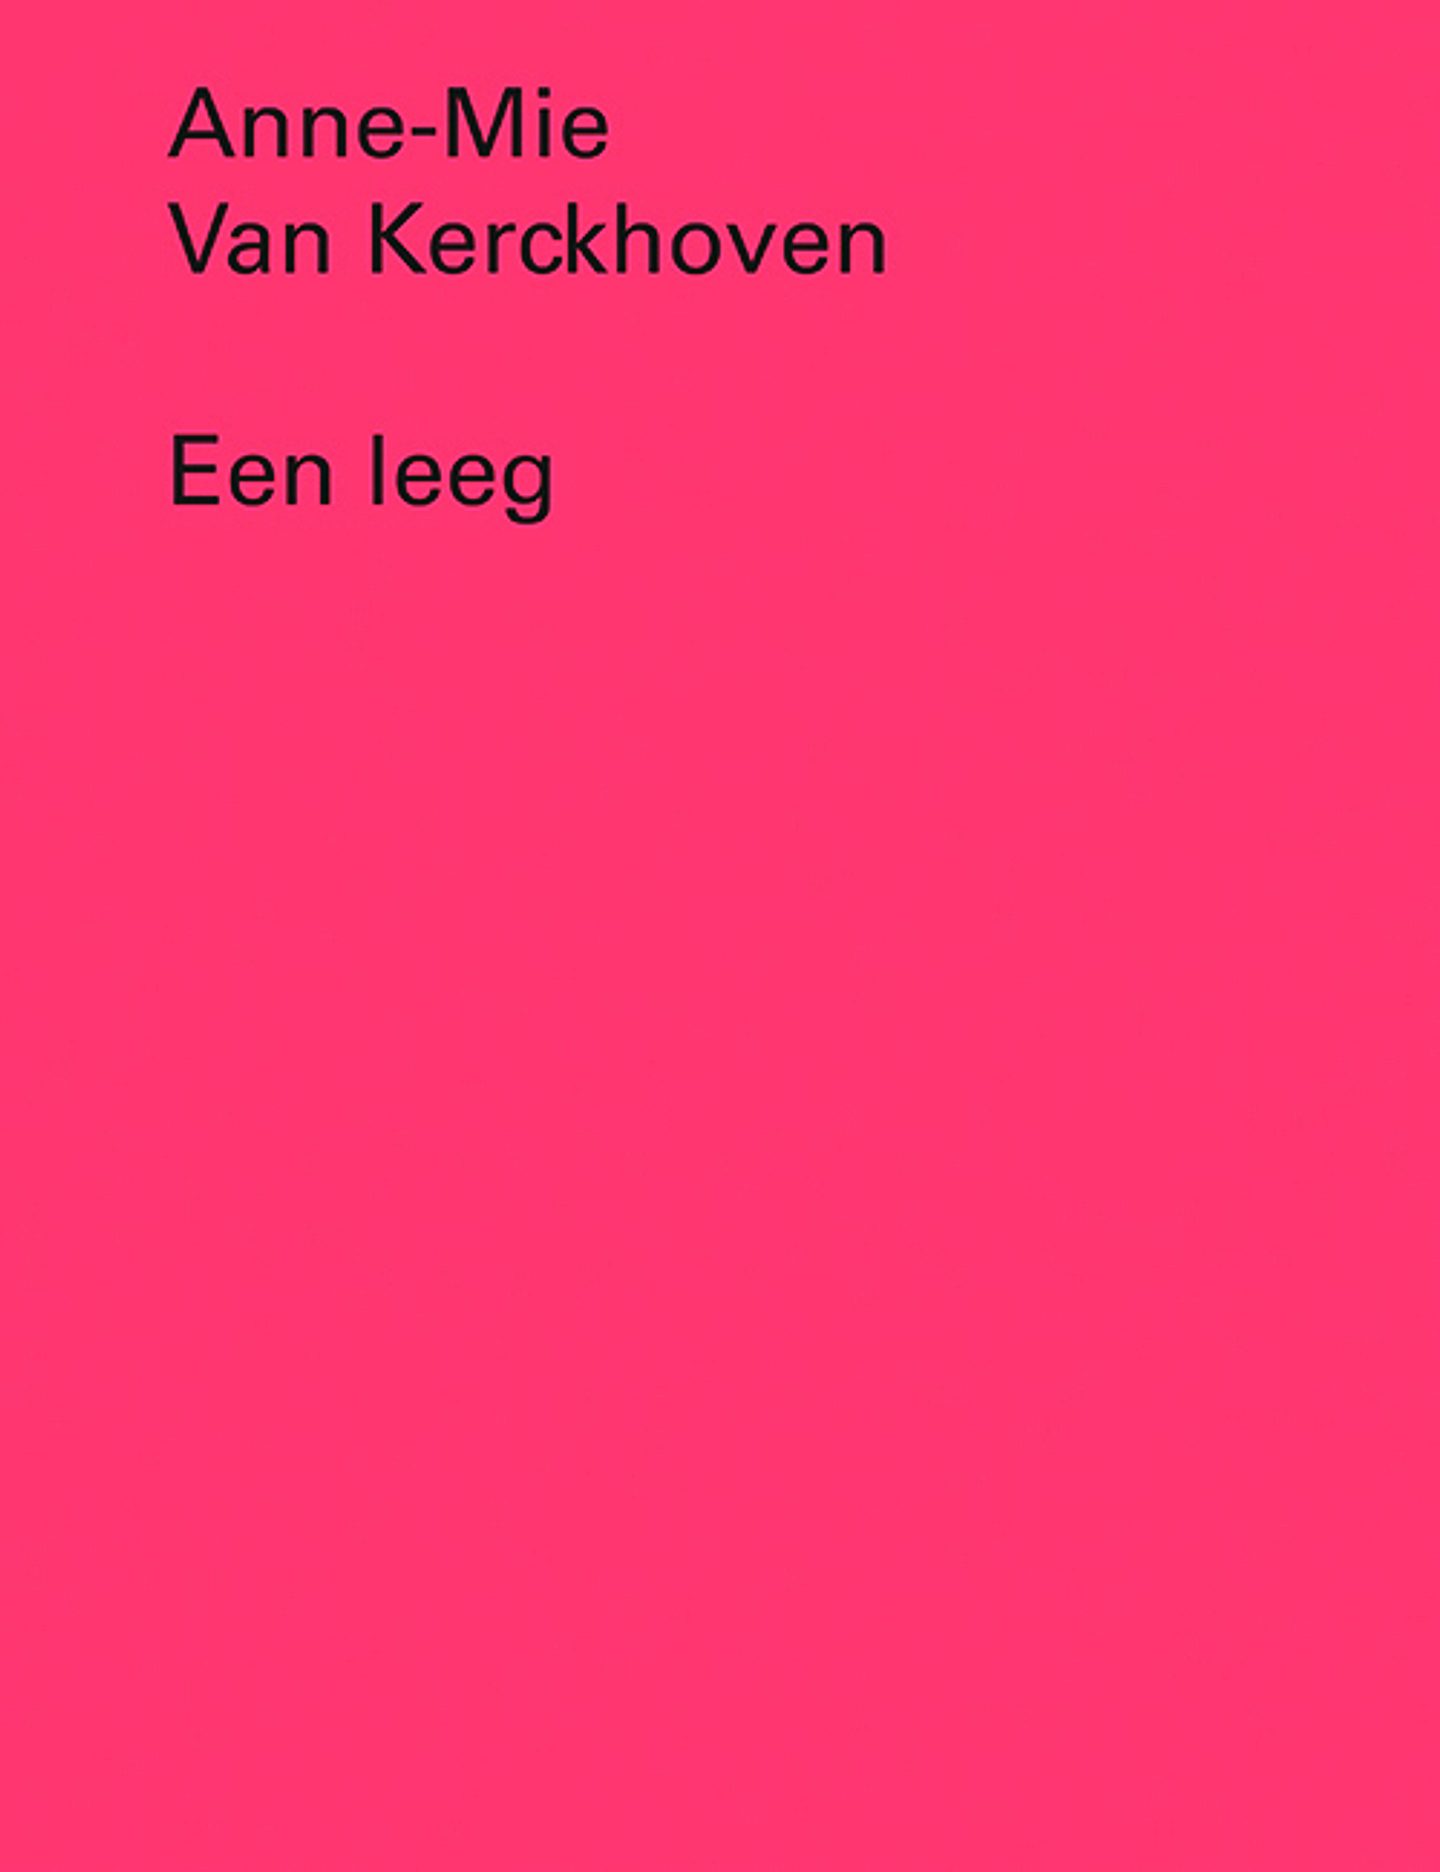 Anne-Mie Van Kerckhoven. Een leeg